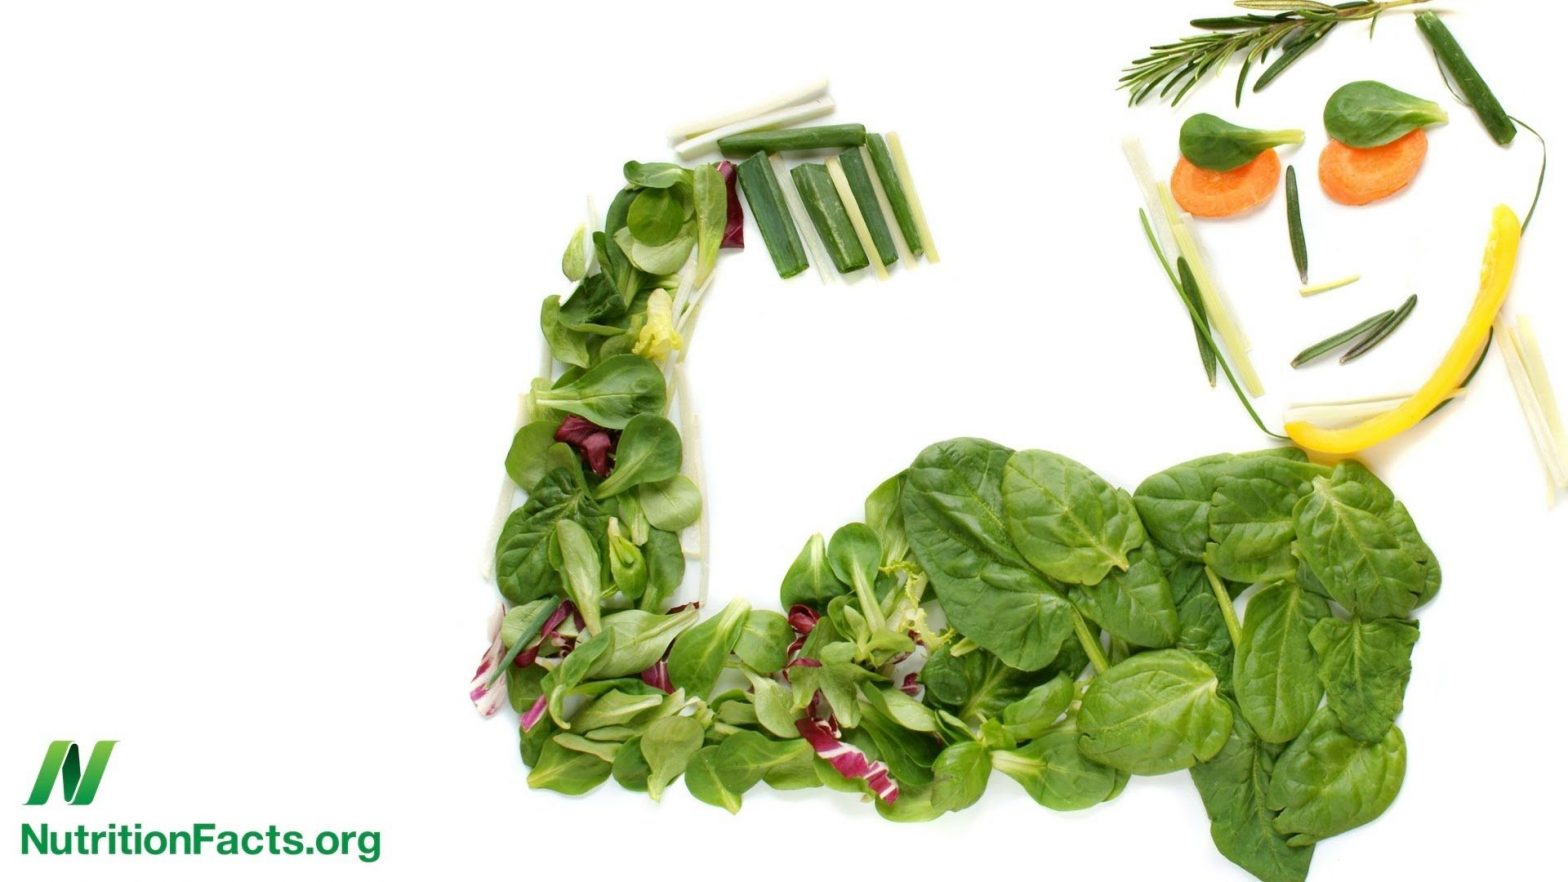 feuilles vertes et légumes variés donnent une idée de bonne santé